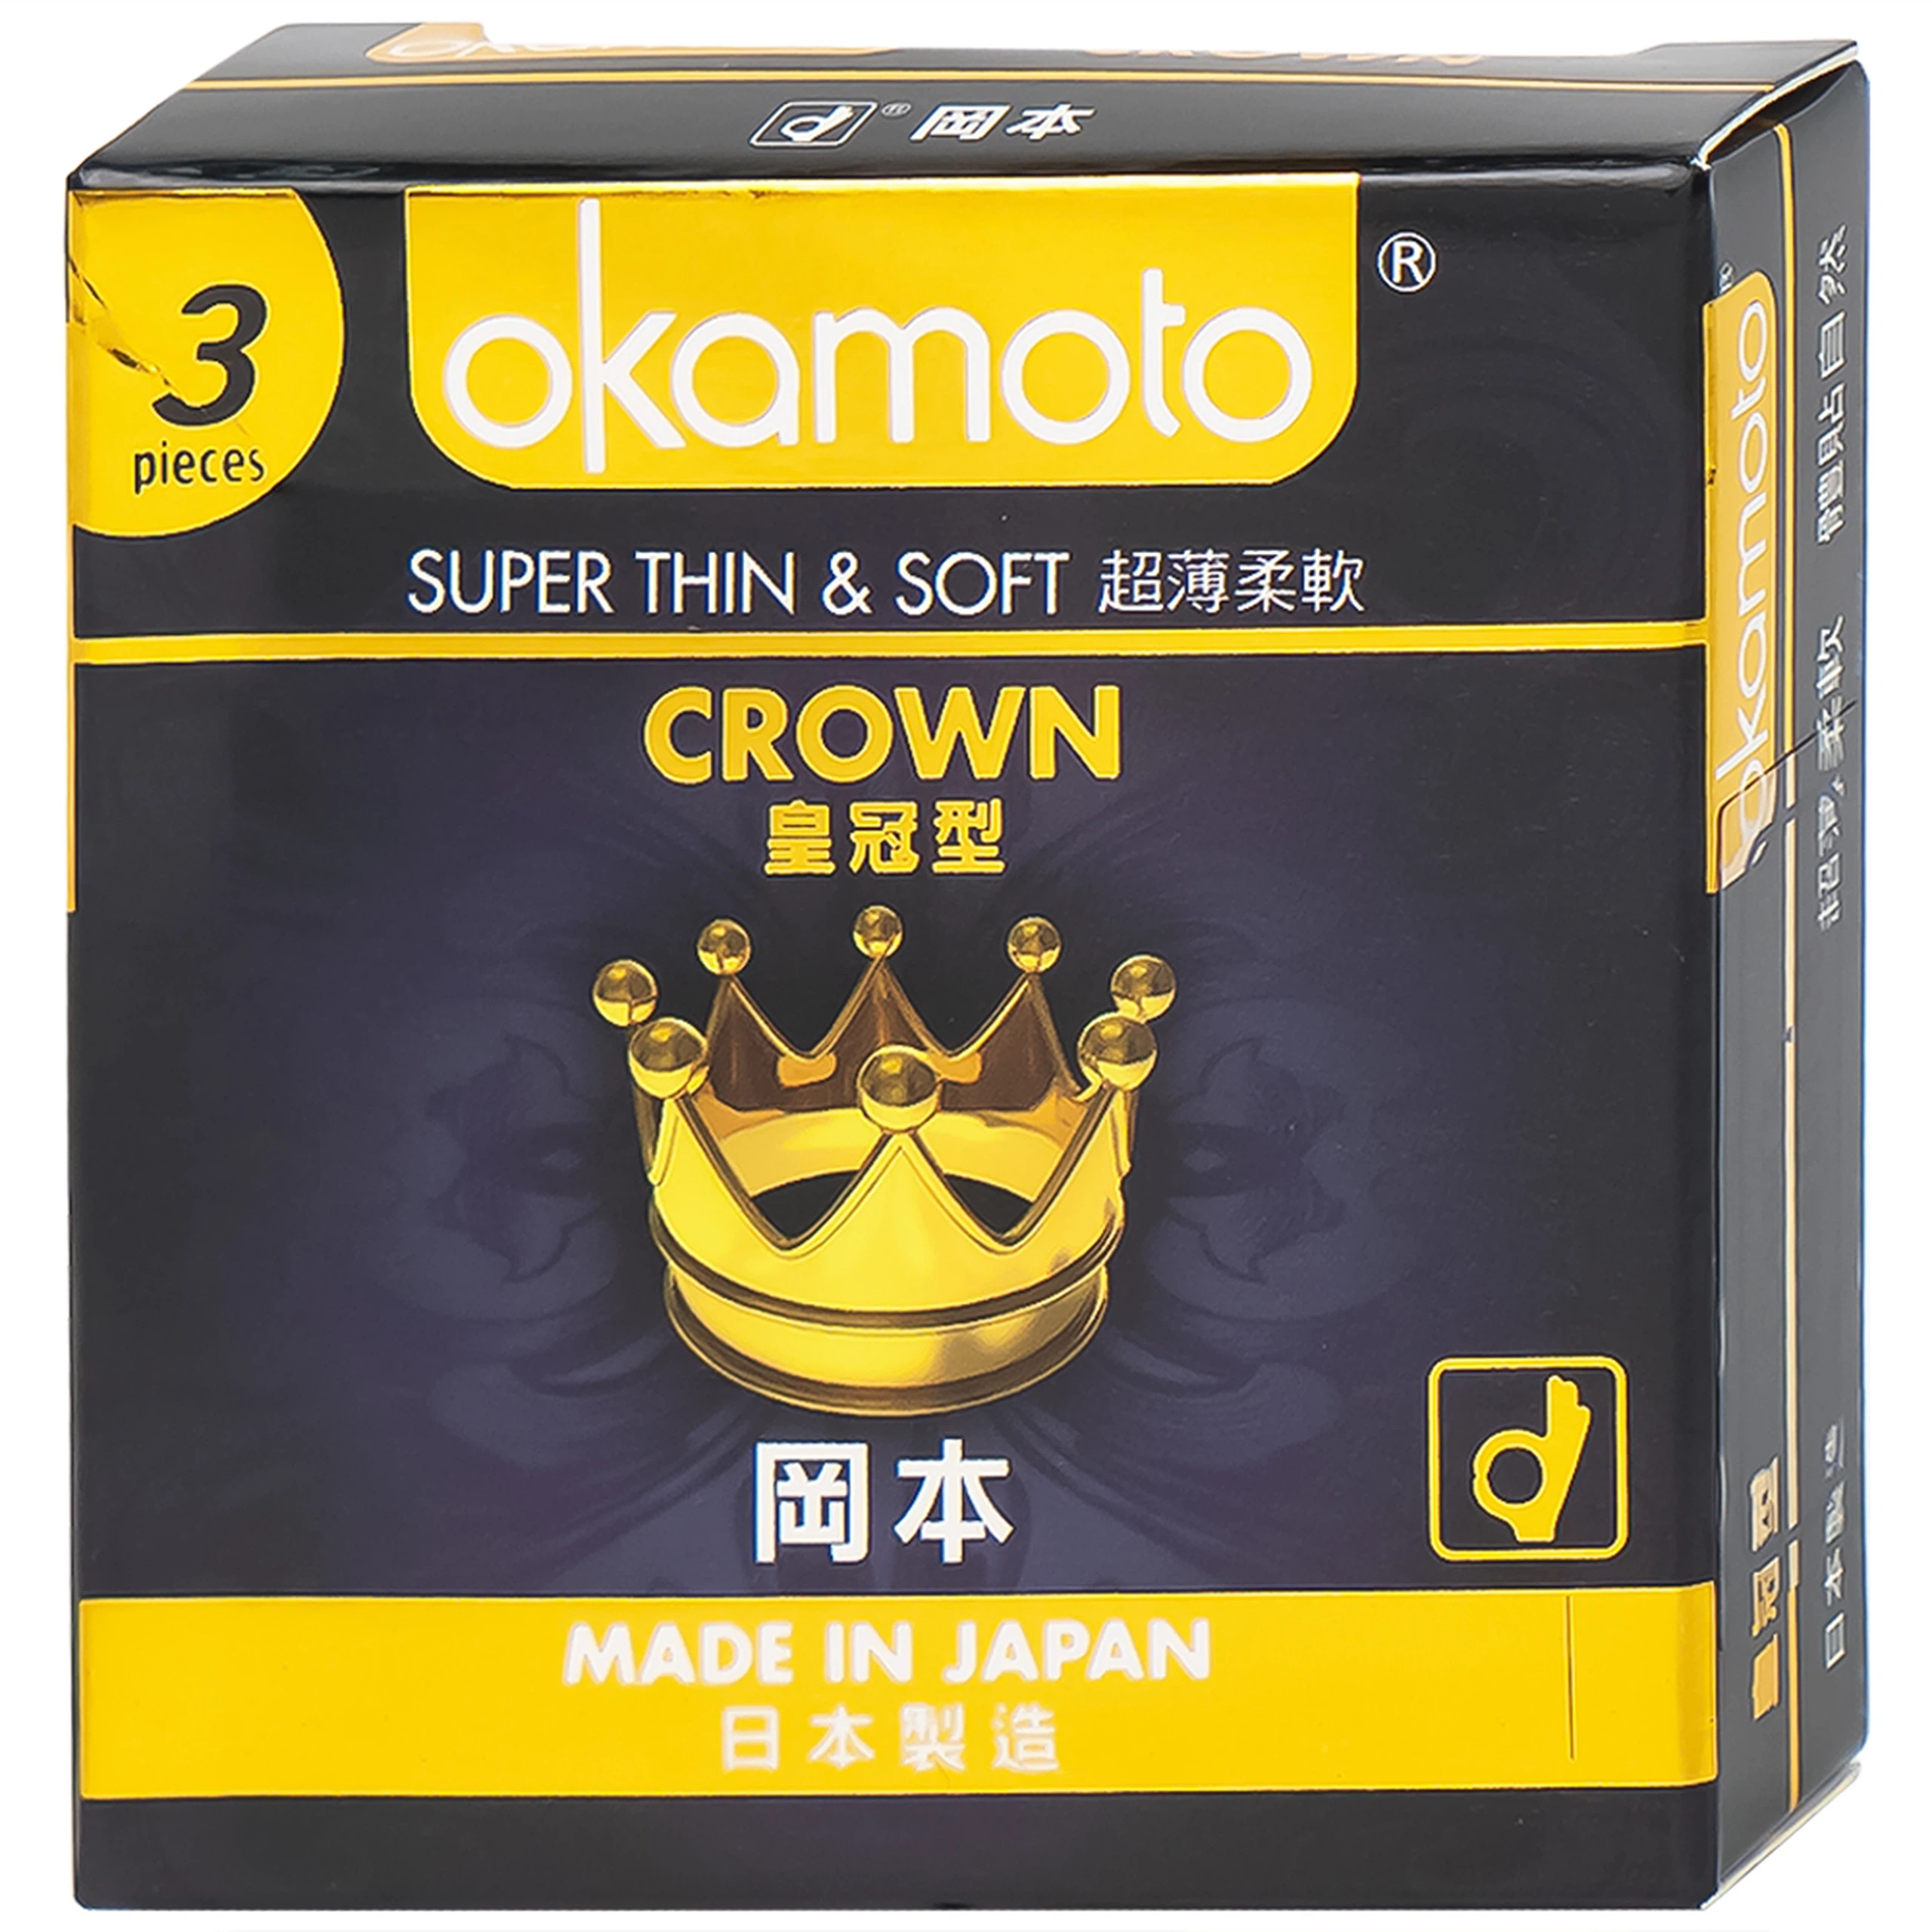 Bao cao su Okamoto Crown kích cỡ nhỏ, siêu mỏng, mềm mại dùng để phòng tránh thai và ngăn ngừa HIV (3 cái)